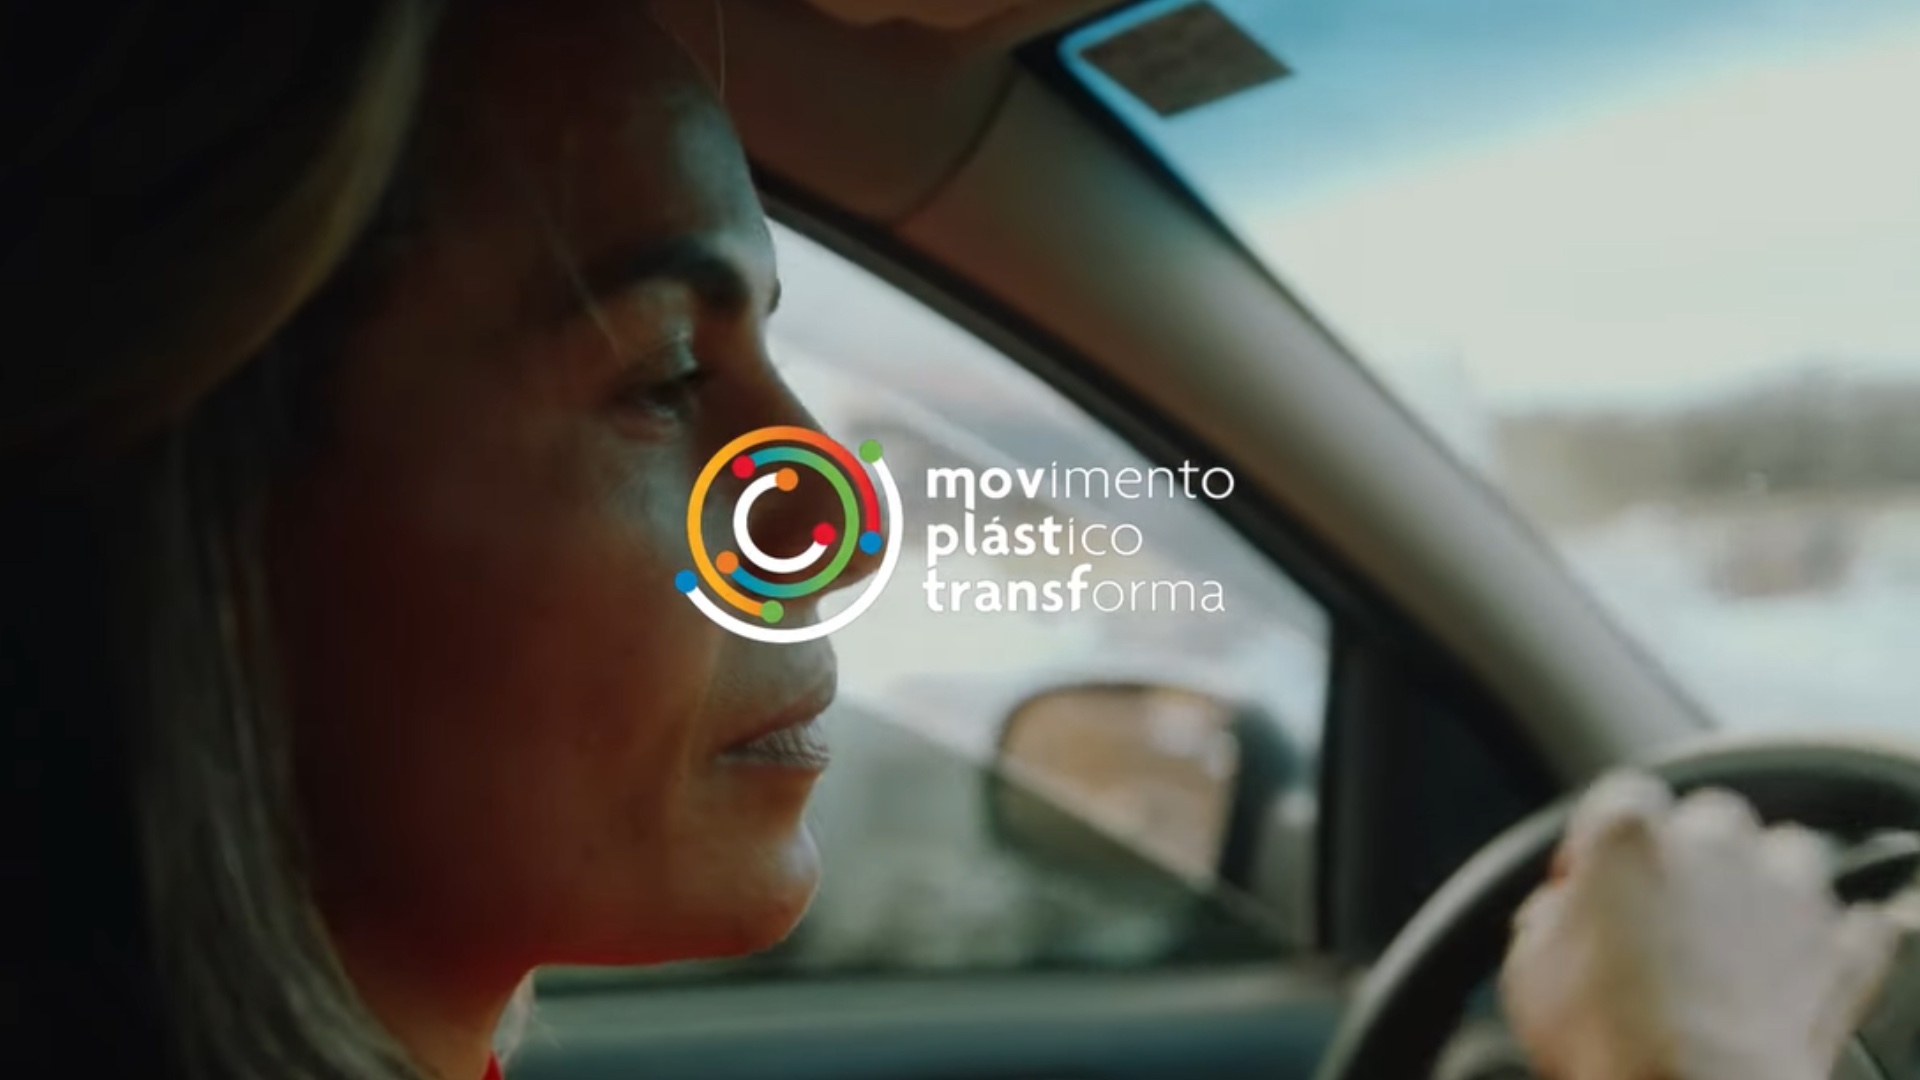 Nova websérie destaca benefícios do plástico